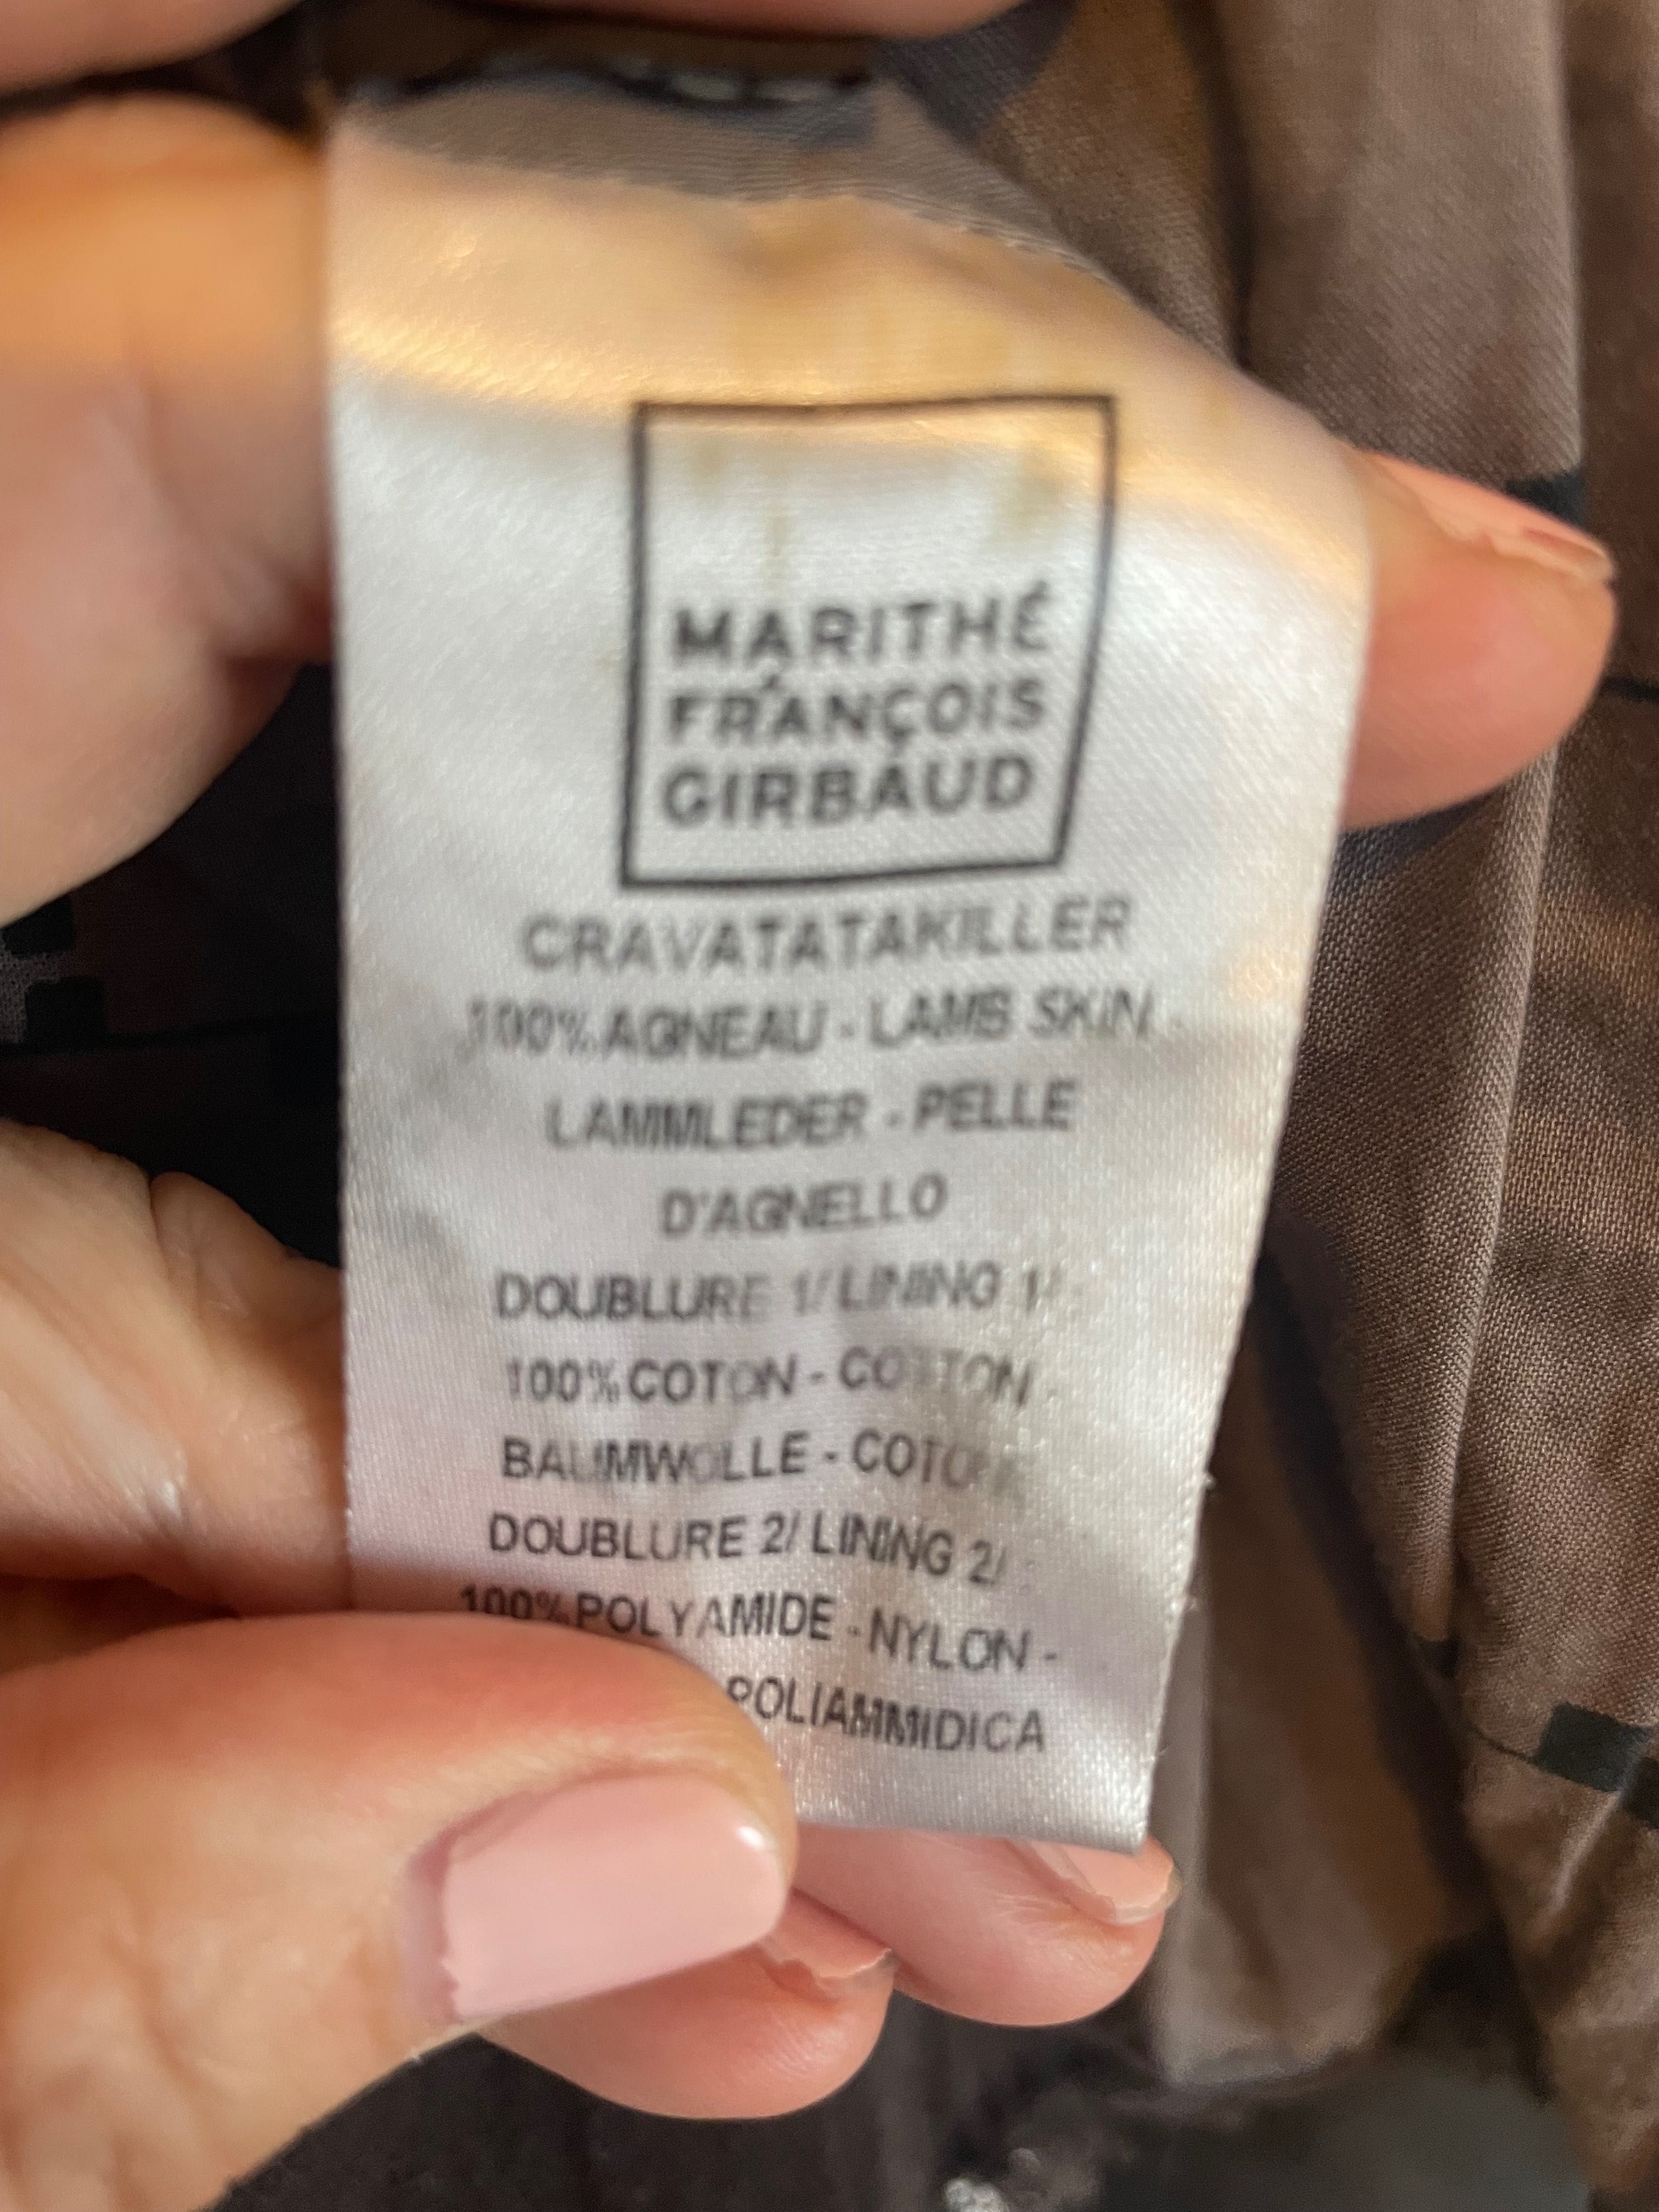 Marithe Fr.Giirbaud  & Calvin klein jeans m